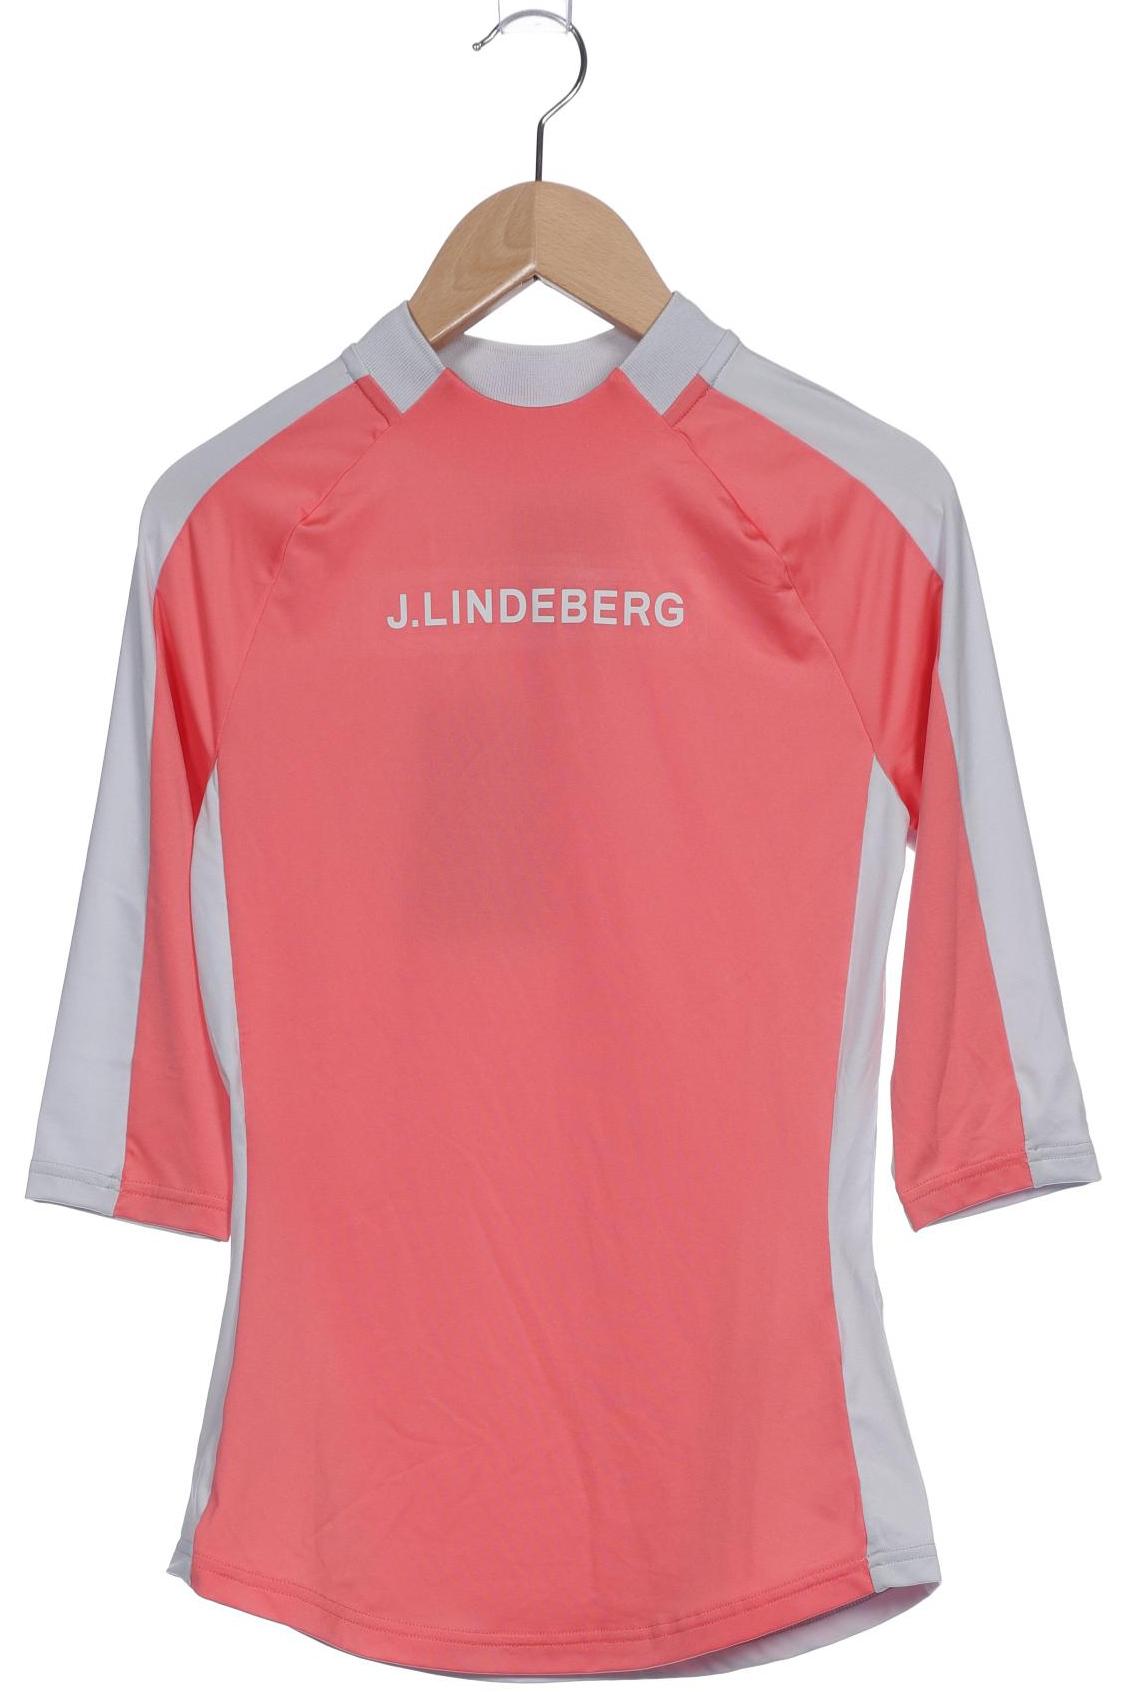 J.lindeberg Damen Langarmshirt, pink, Gr. 34 von J.LINDEBERG